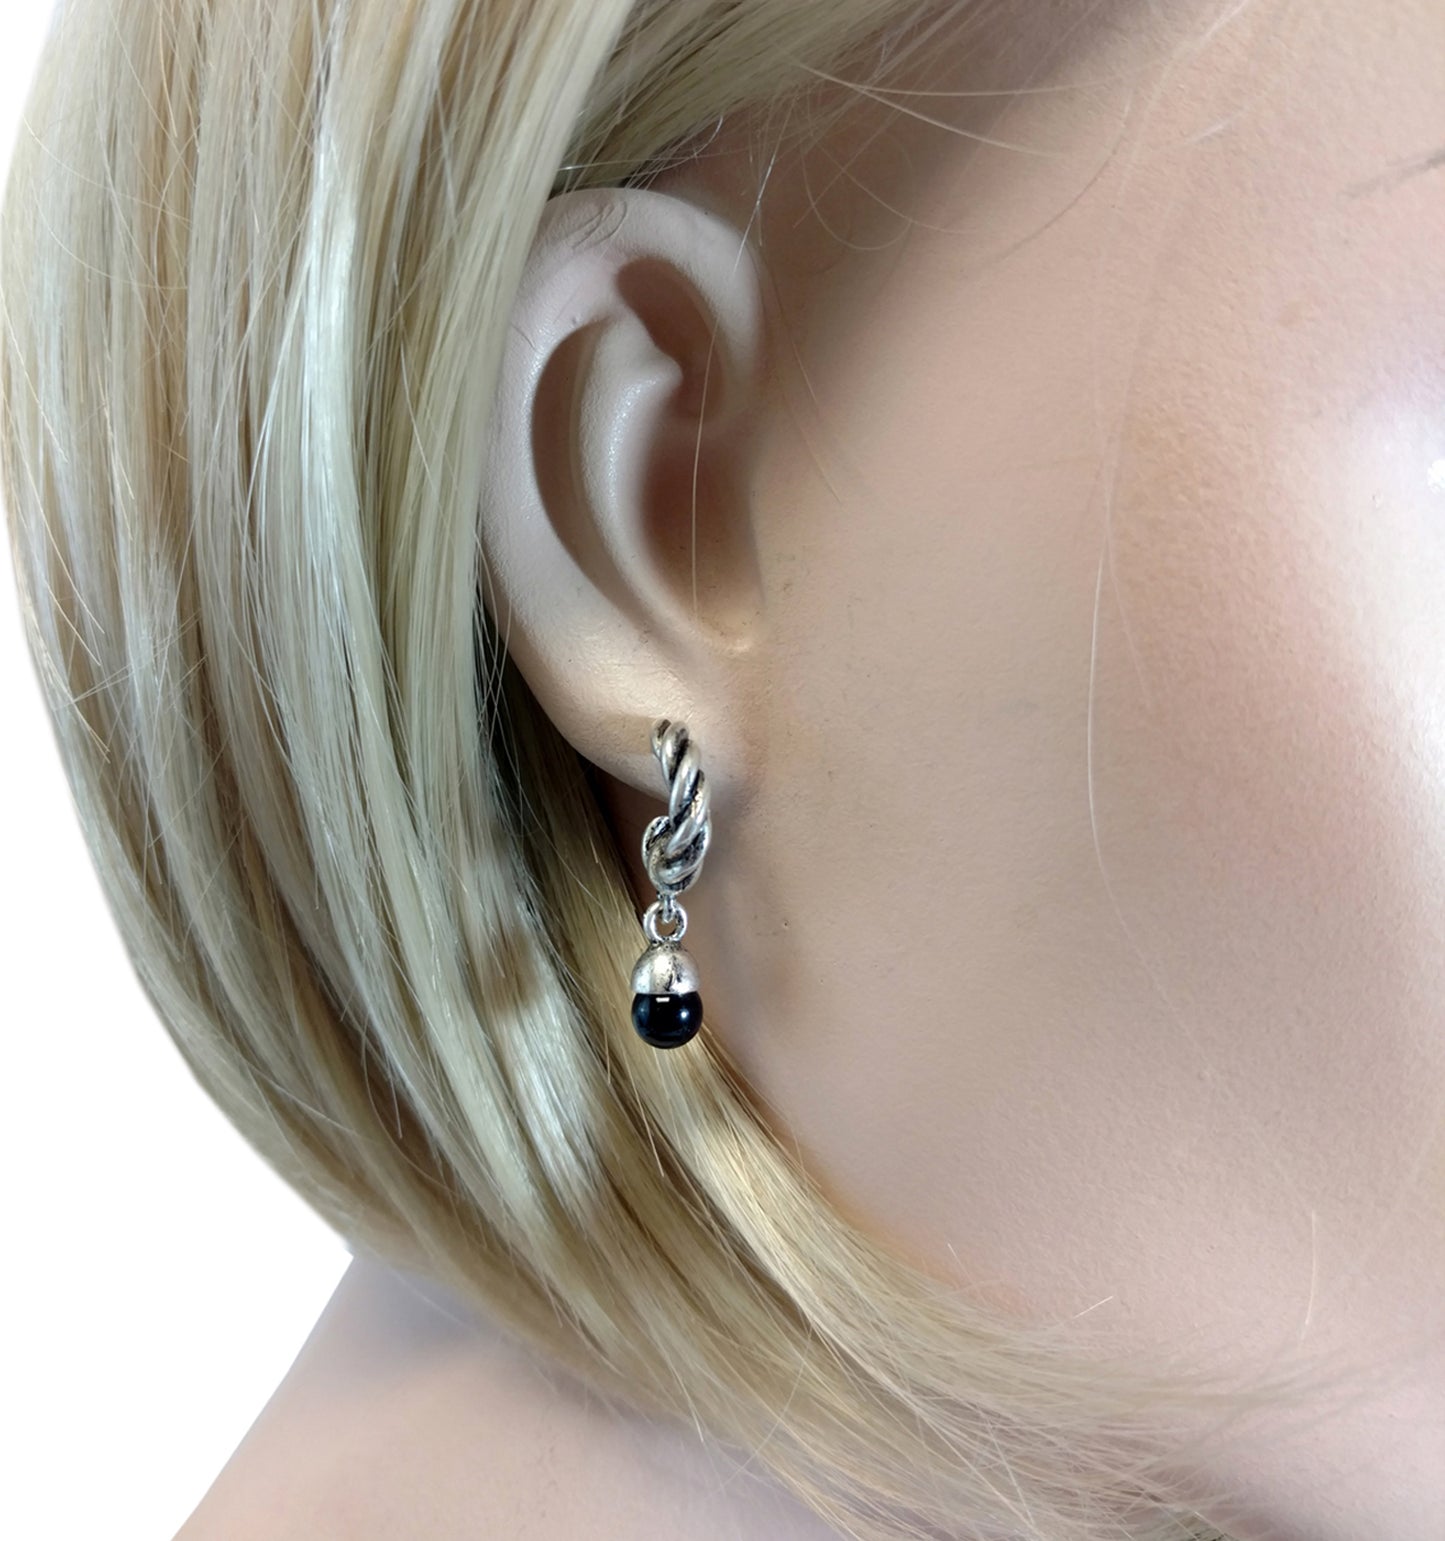 New Antiqued Silver Tone Black Hoop Pierced Earrings 1"